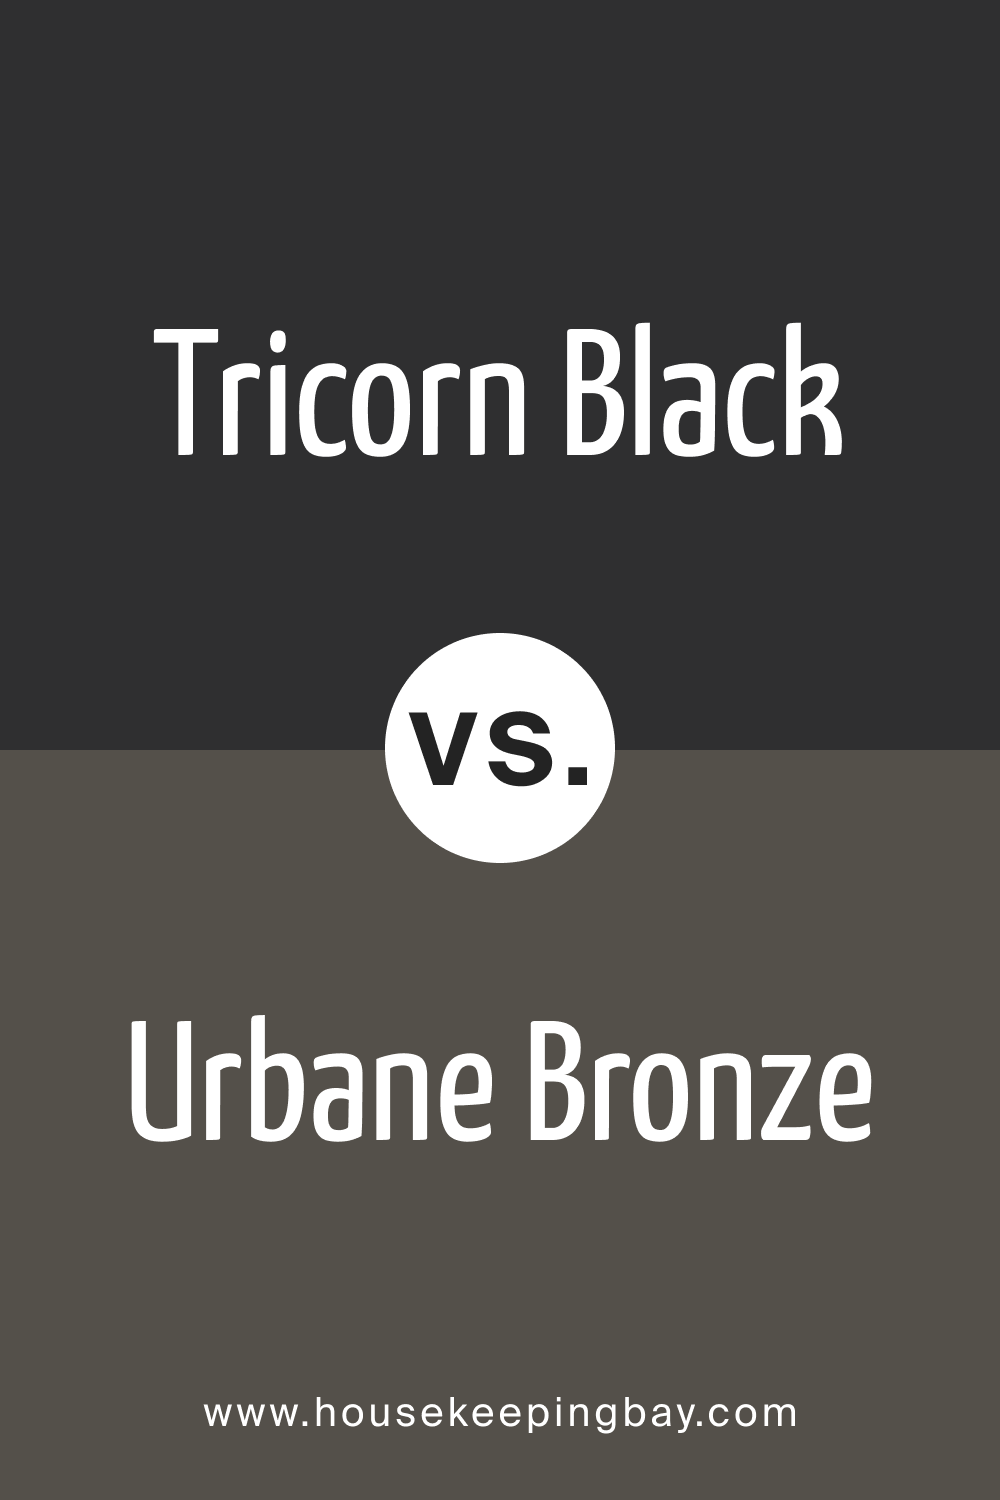 Tricorn Black vs. Urbane Bronze